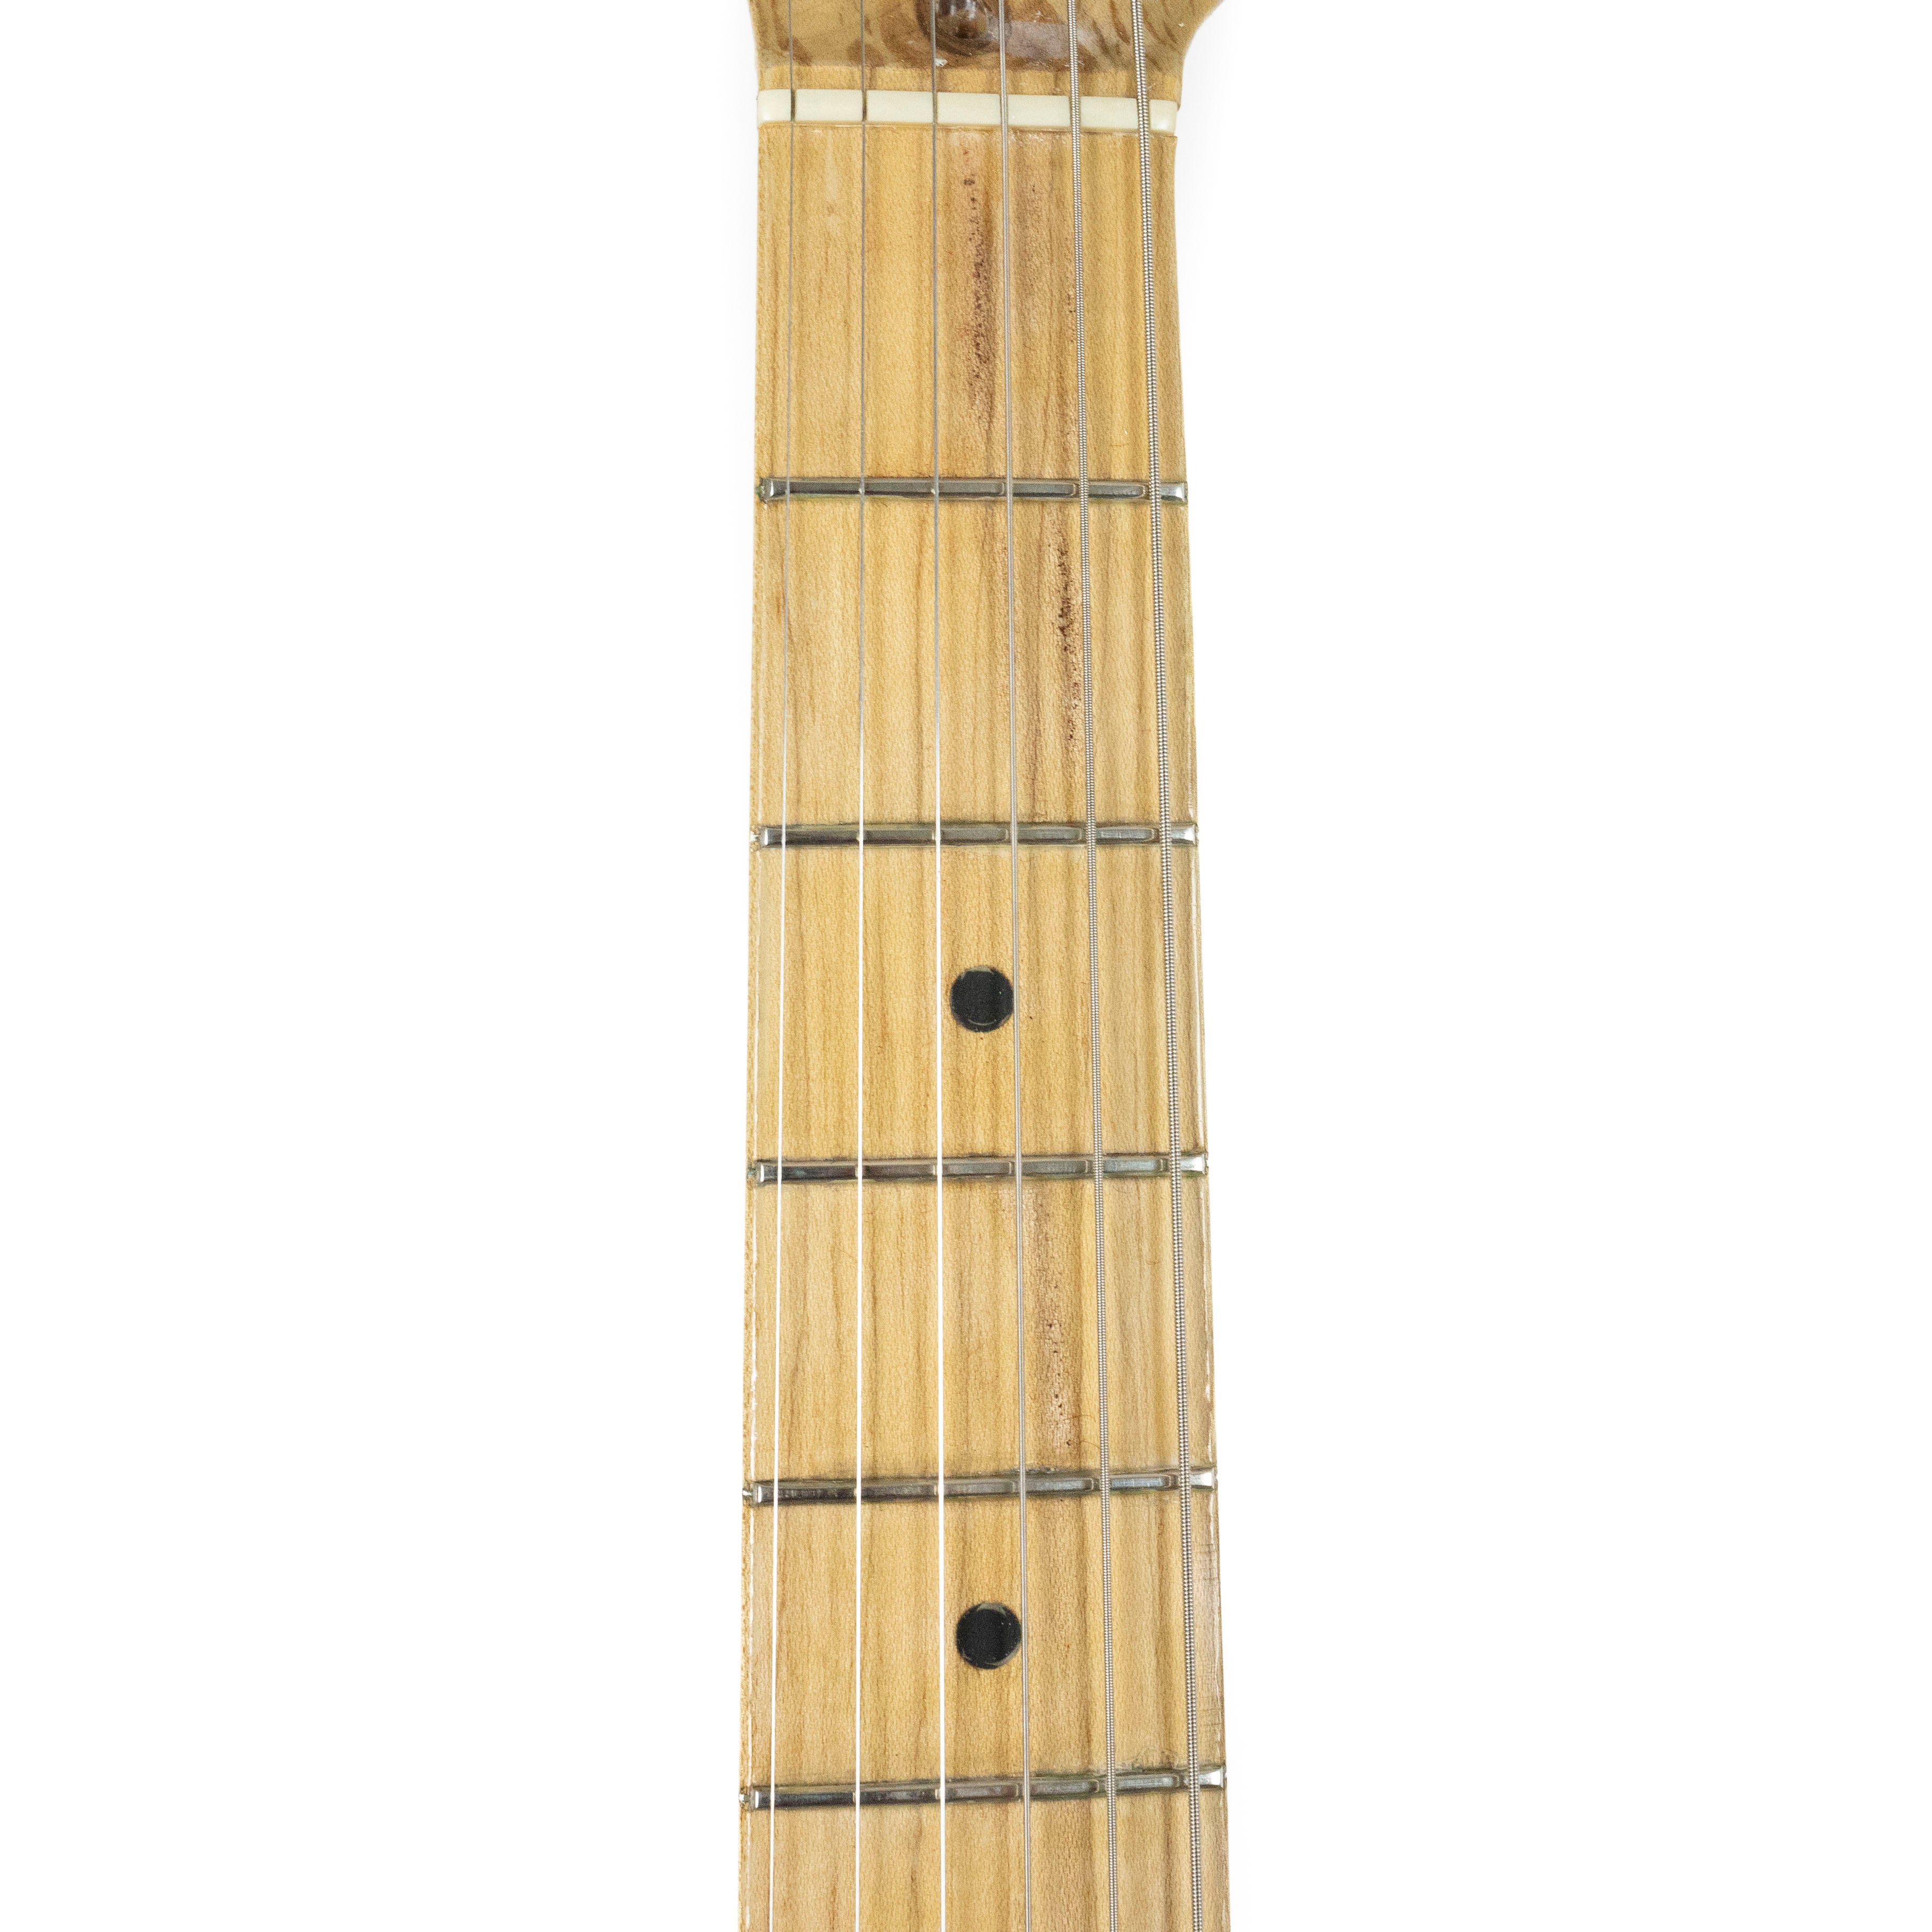 Fender 1988 Custom Shop Eric Clapton Stratocaster Torino Red